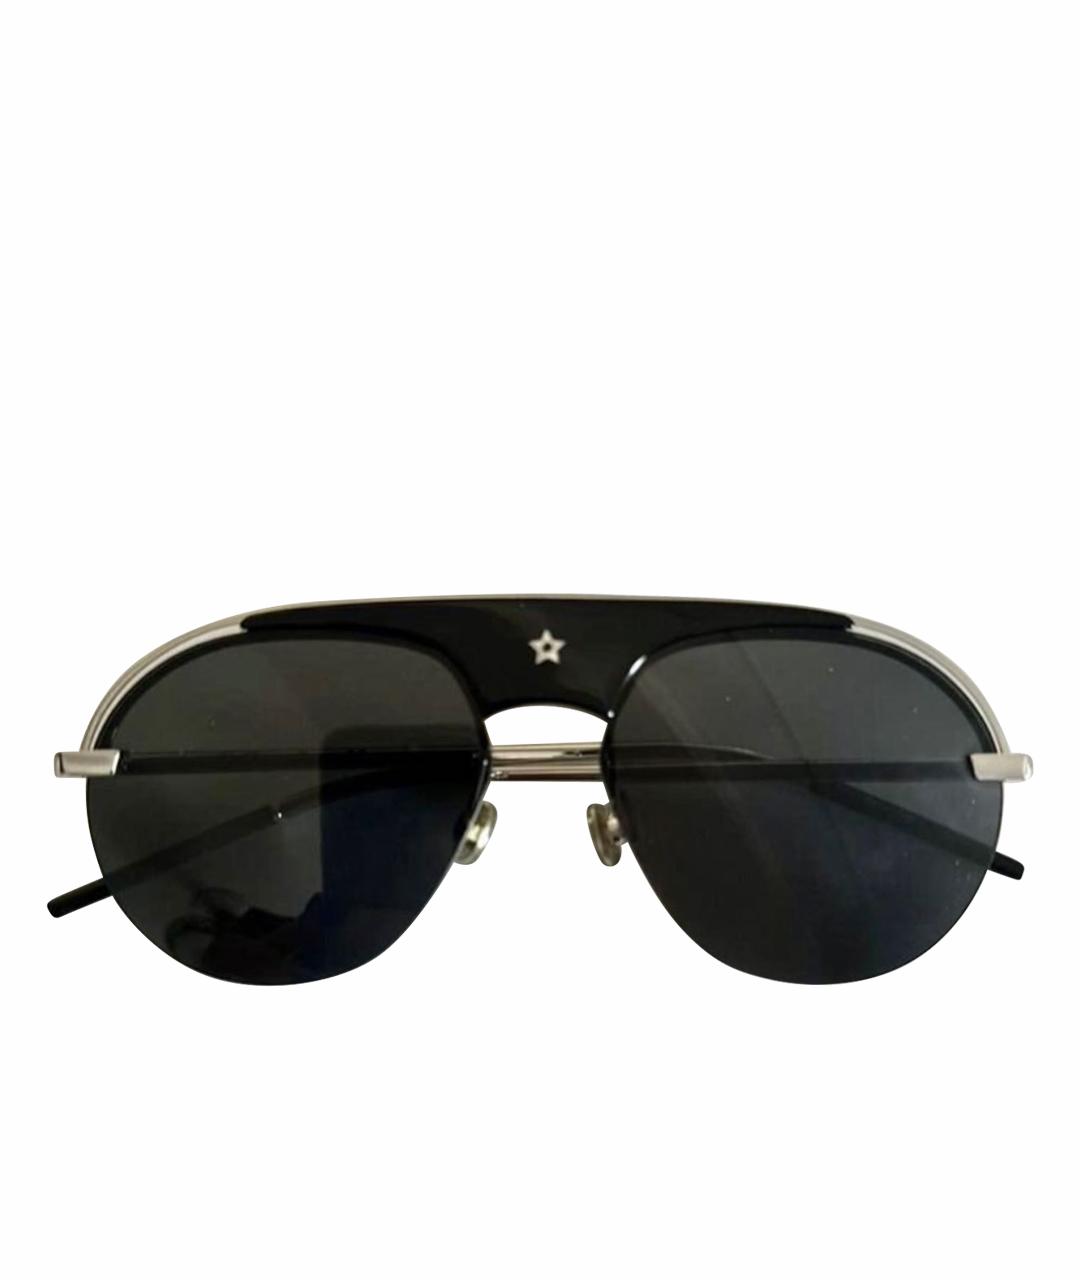 CHRISTIAN DIOR PRE-OWNED Черные солнцезащитные очки, фото 1